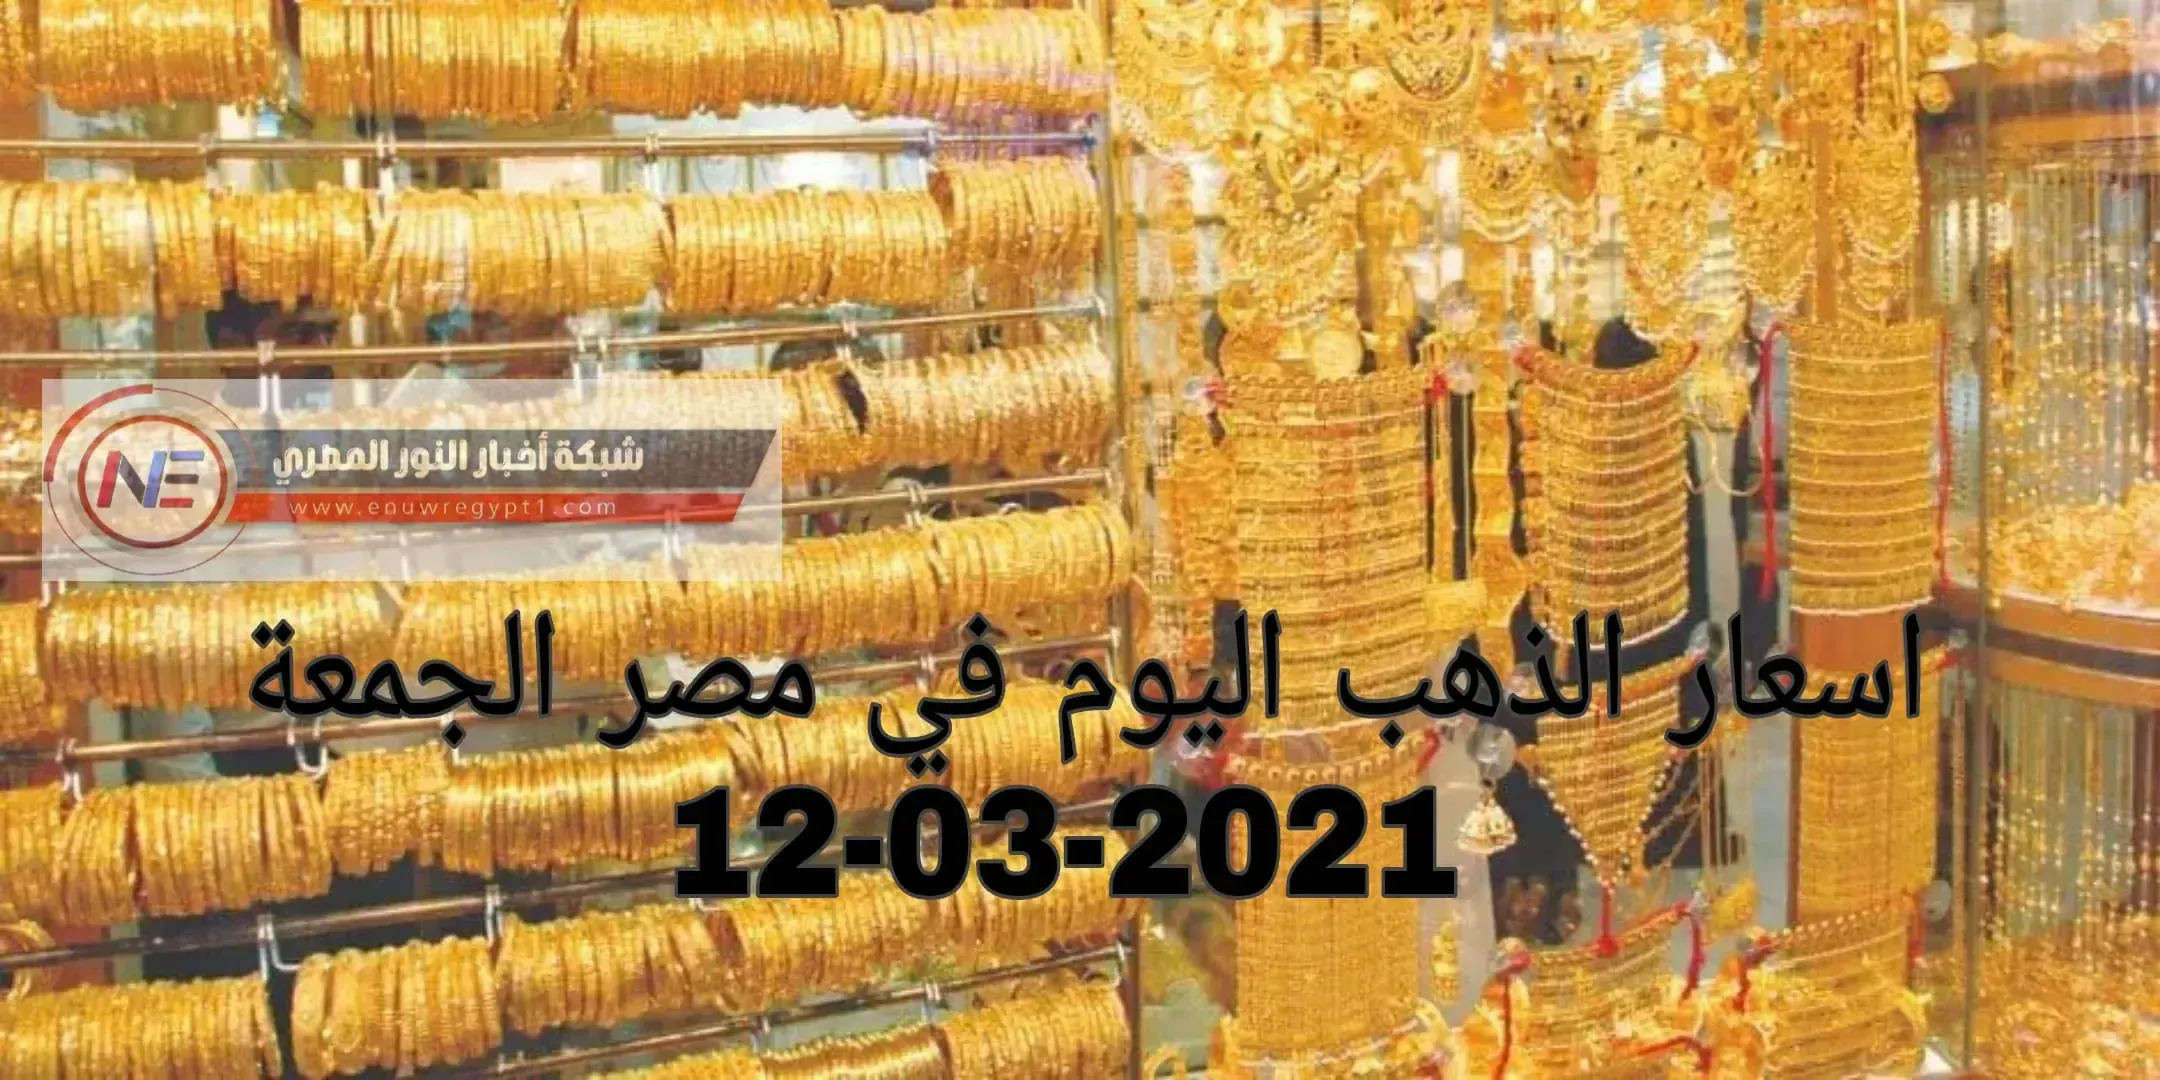 ارتفاع جديد في اسعار الذهب اليوم في مصر | سعر الذهب اليوم الجمعة 12-03-2021 في السوق المصري | سعر جرام الذهب اليوم في محلات الصاغة